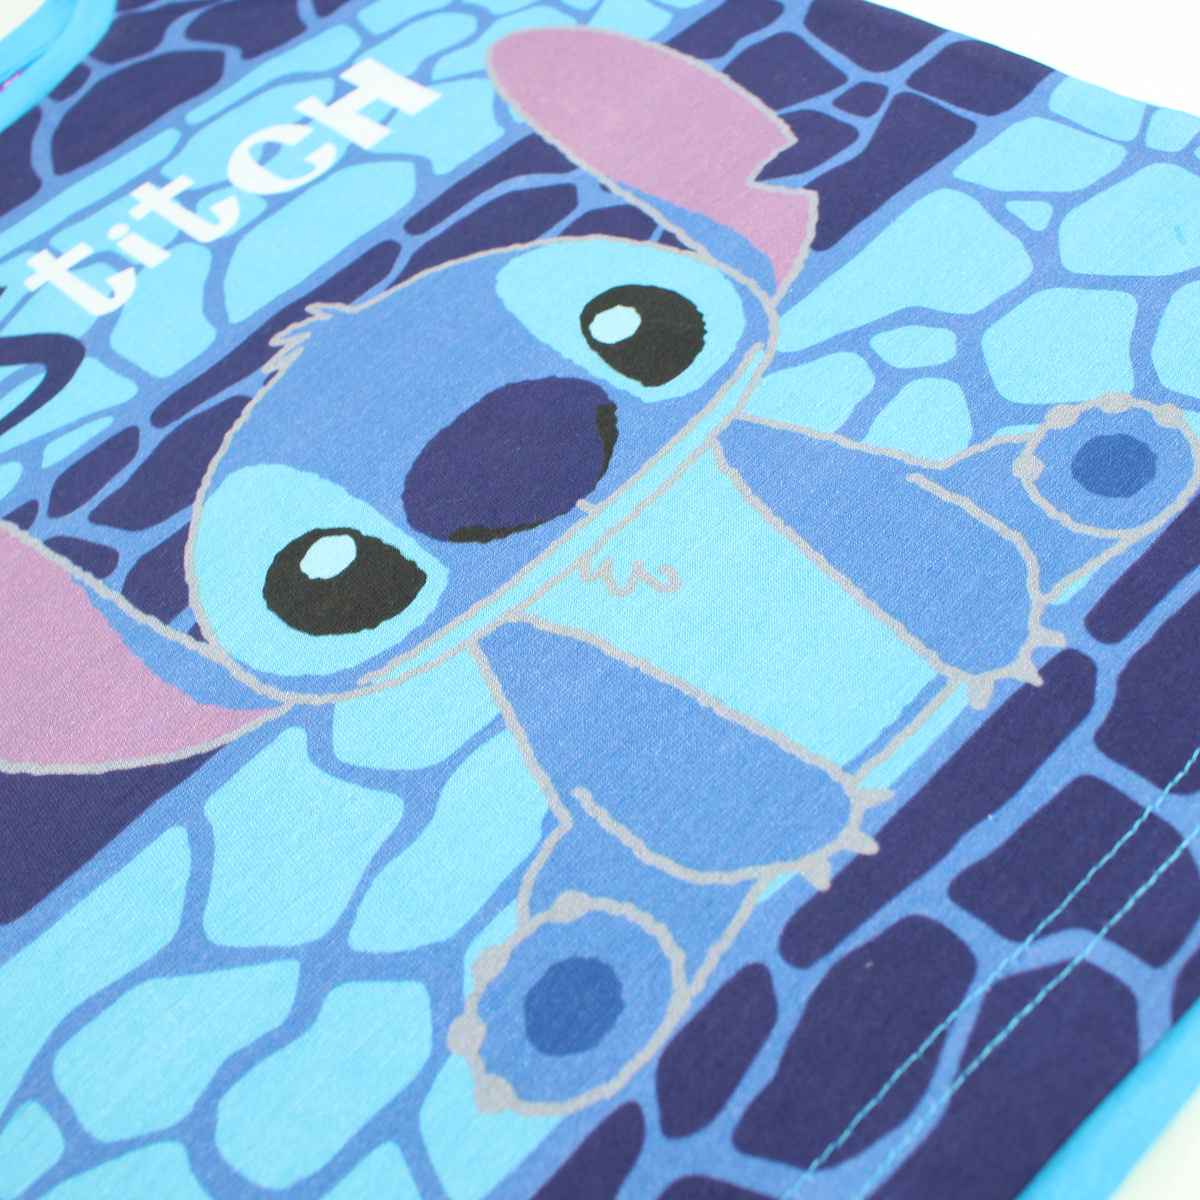 Disney Stitch Trägerloses Tanktop für Jungs in Blau